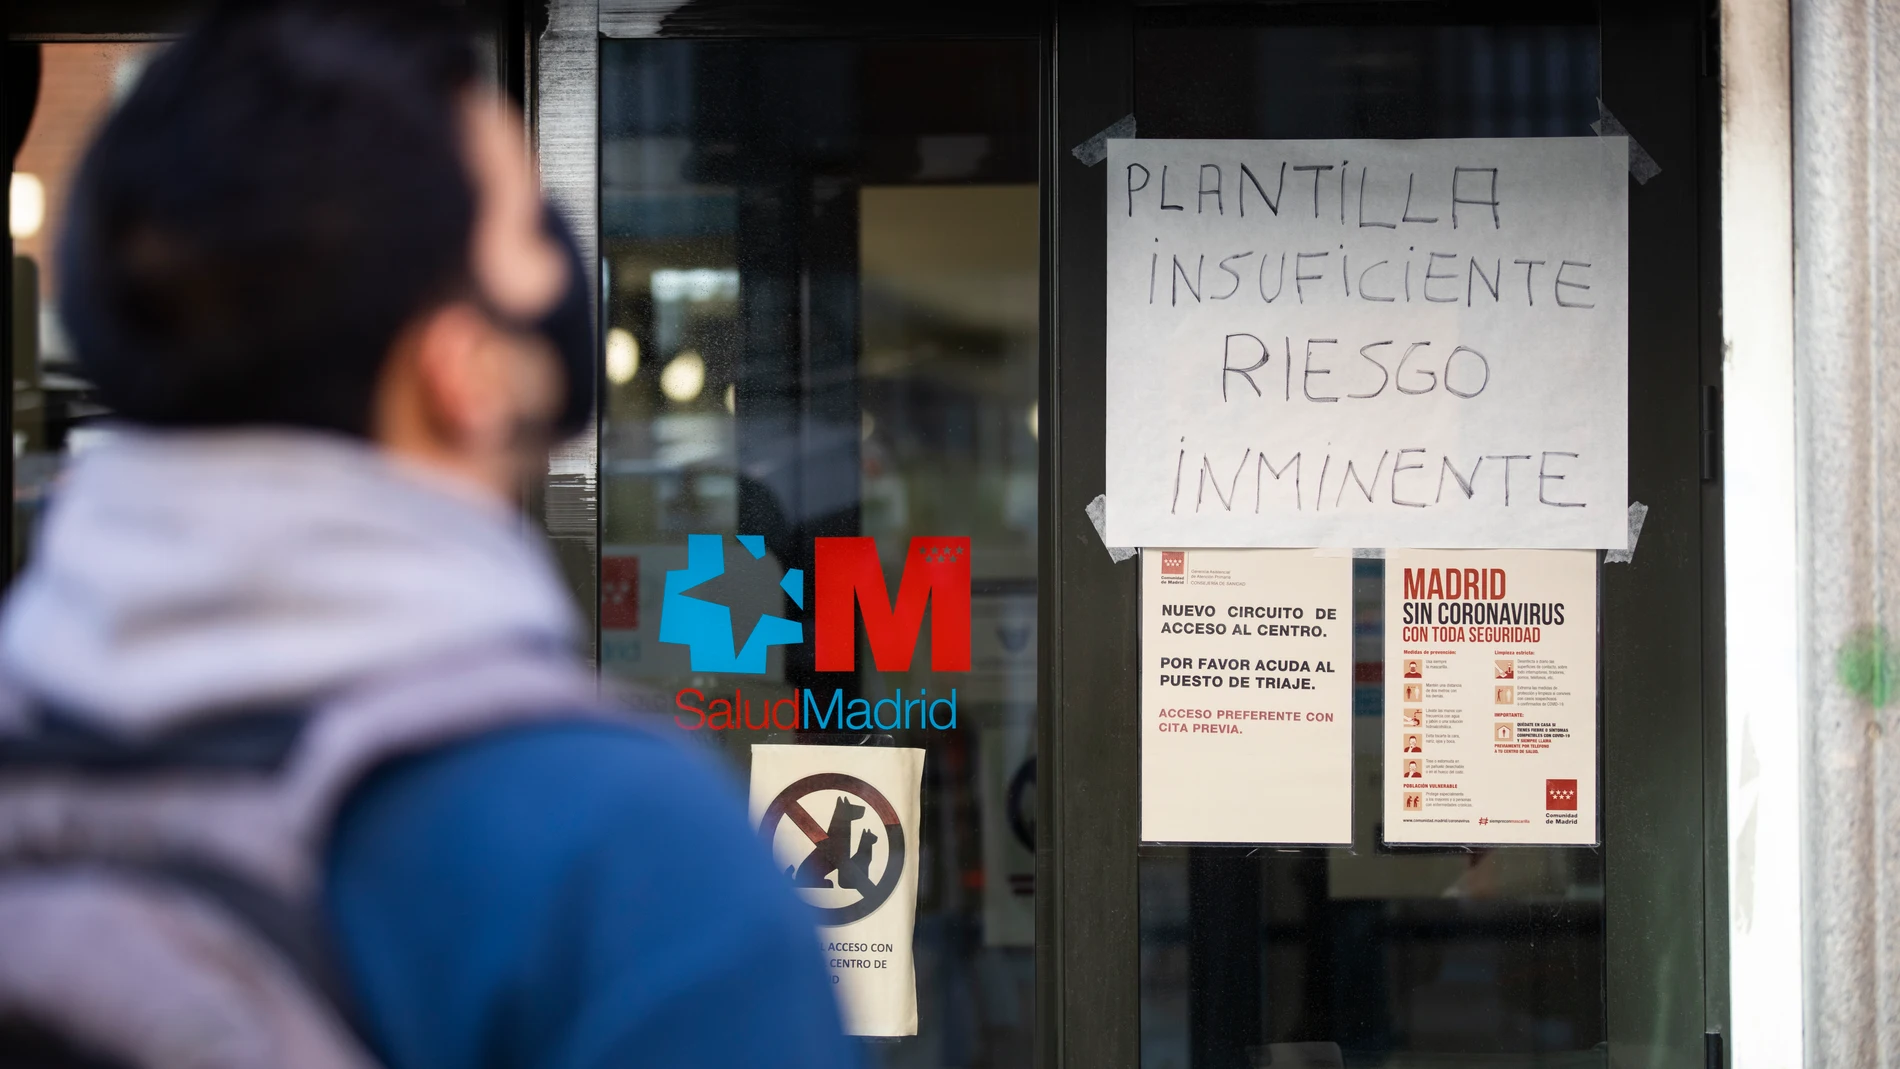 Foto de archivo del Centro de Salud Las Cortes en el que se puede leer un cartel de "Plantilla insuficiente riesgo inminente" durante la huelga del colectivo de enfermeros